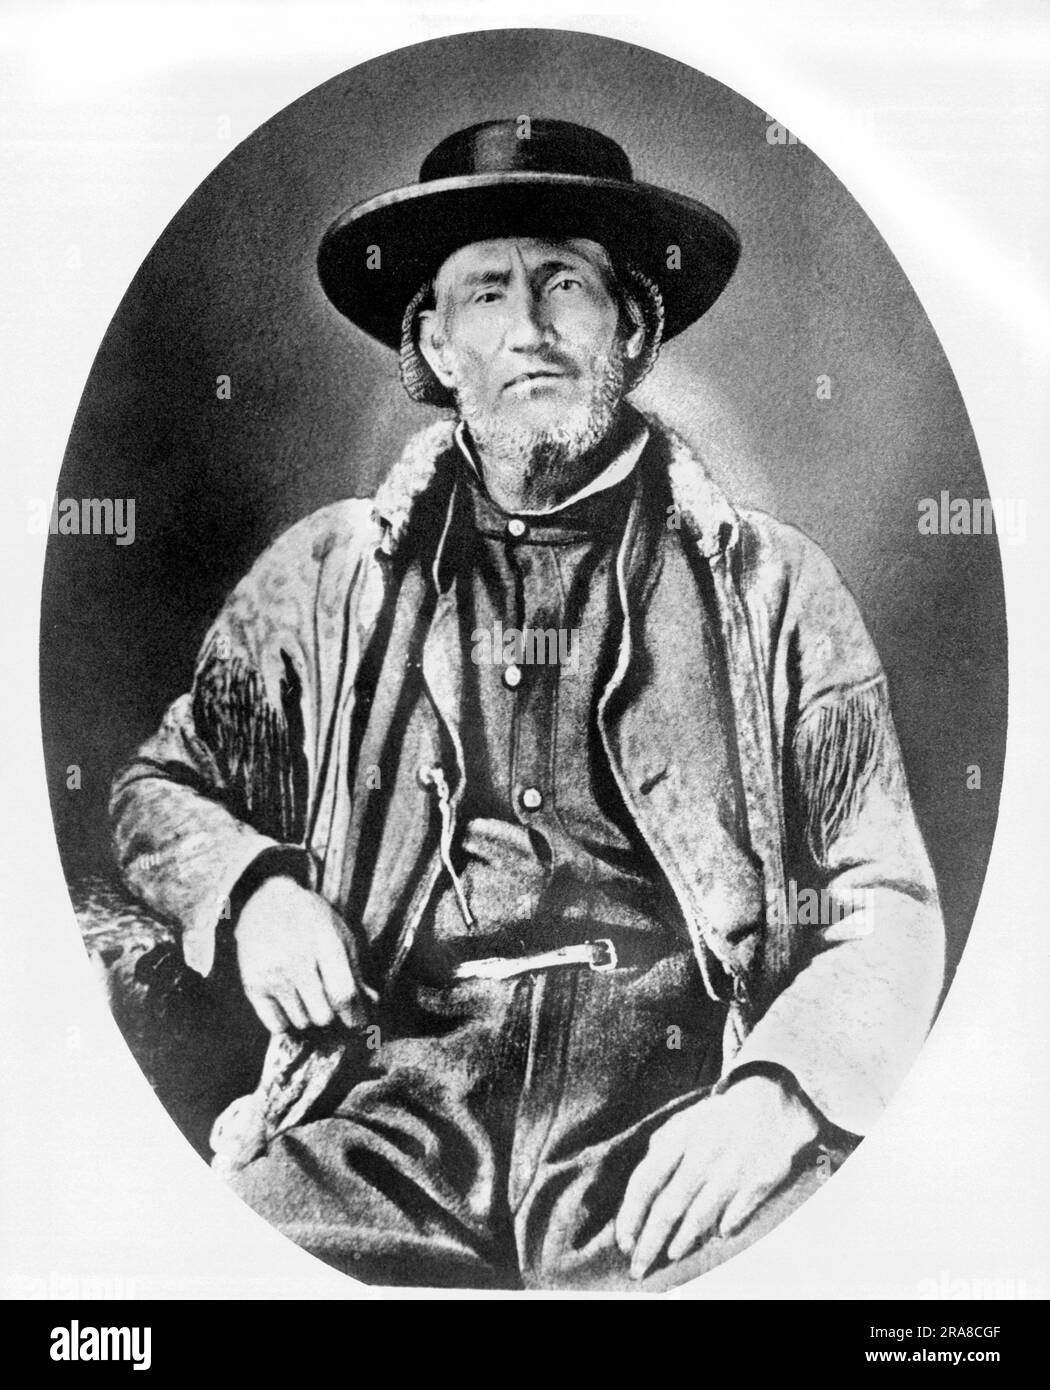 Vereinigte Staaten: c. 1850 Ein Porträt von Jim Bridger, Bergmann, Pfadfinder und Entdecker des amerikanischen Westens. Stockfoto